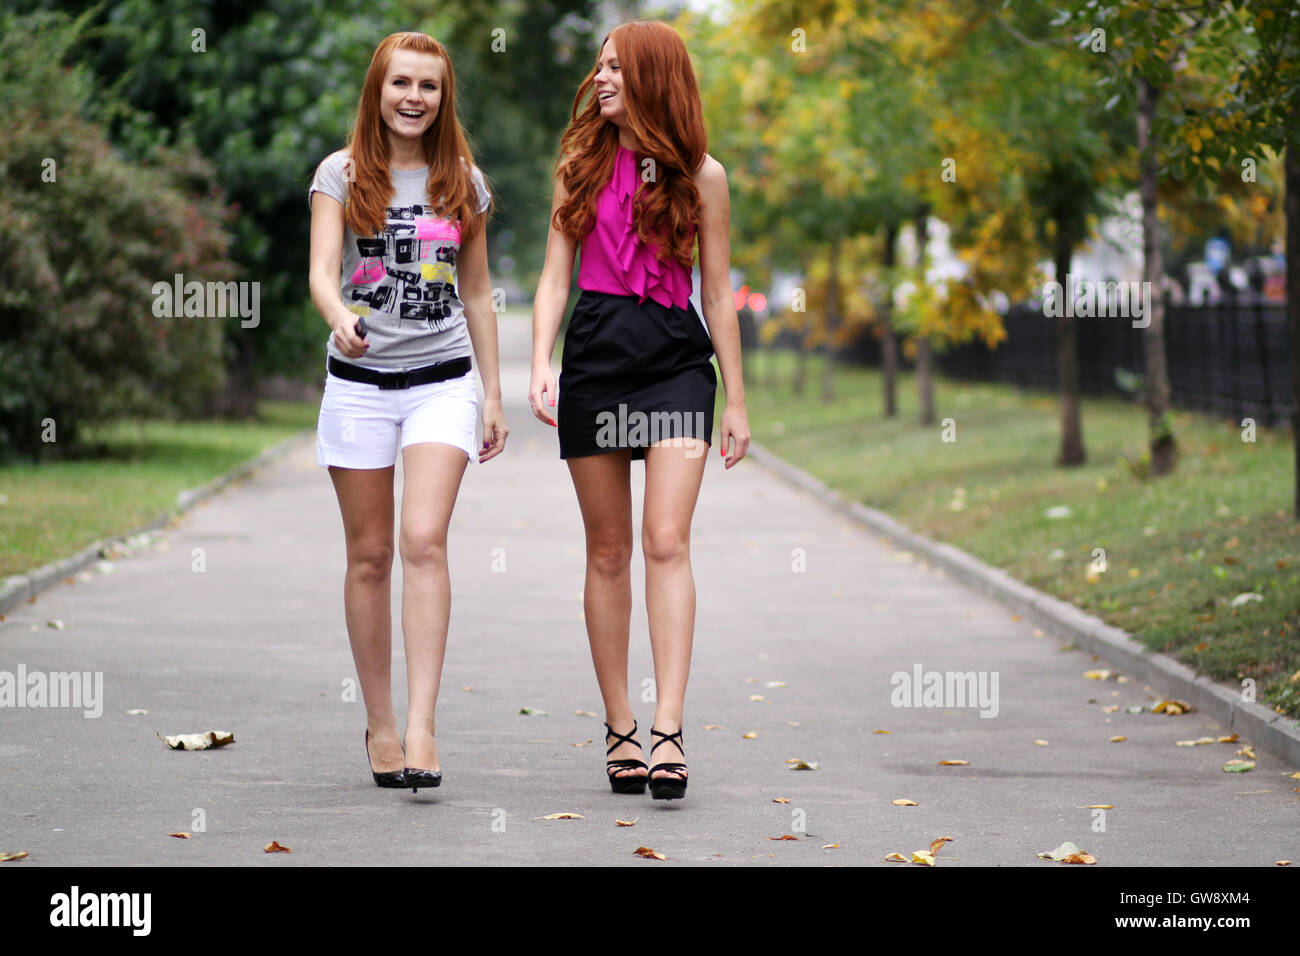 Где девочки гуляют. Девушка гуляет в парке. Девочка гуляет в парке. Две девушки гуляют в парке. Подруги гуляют.